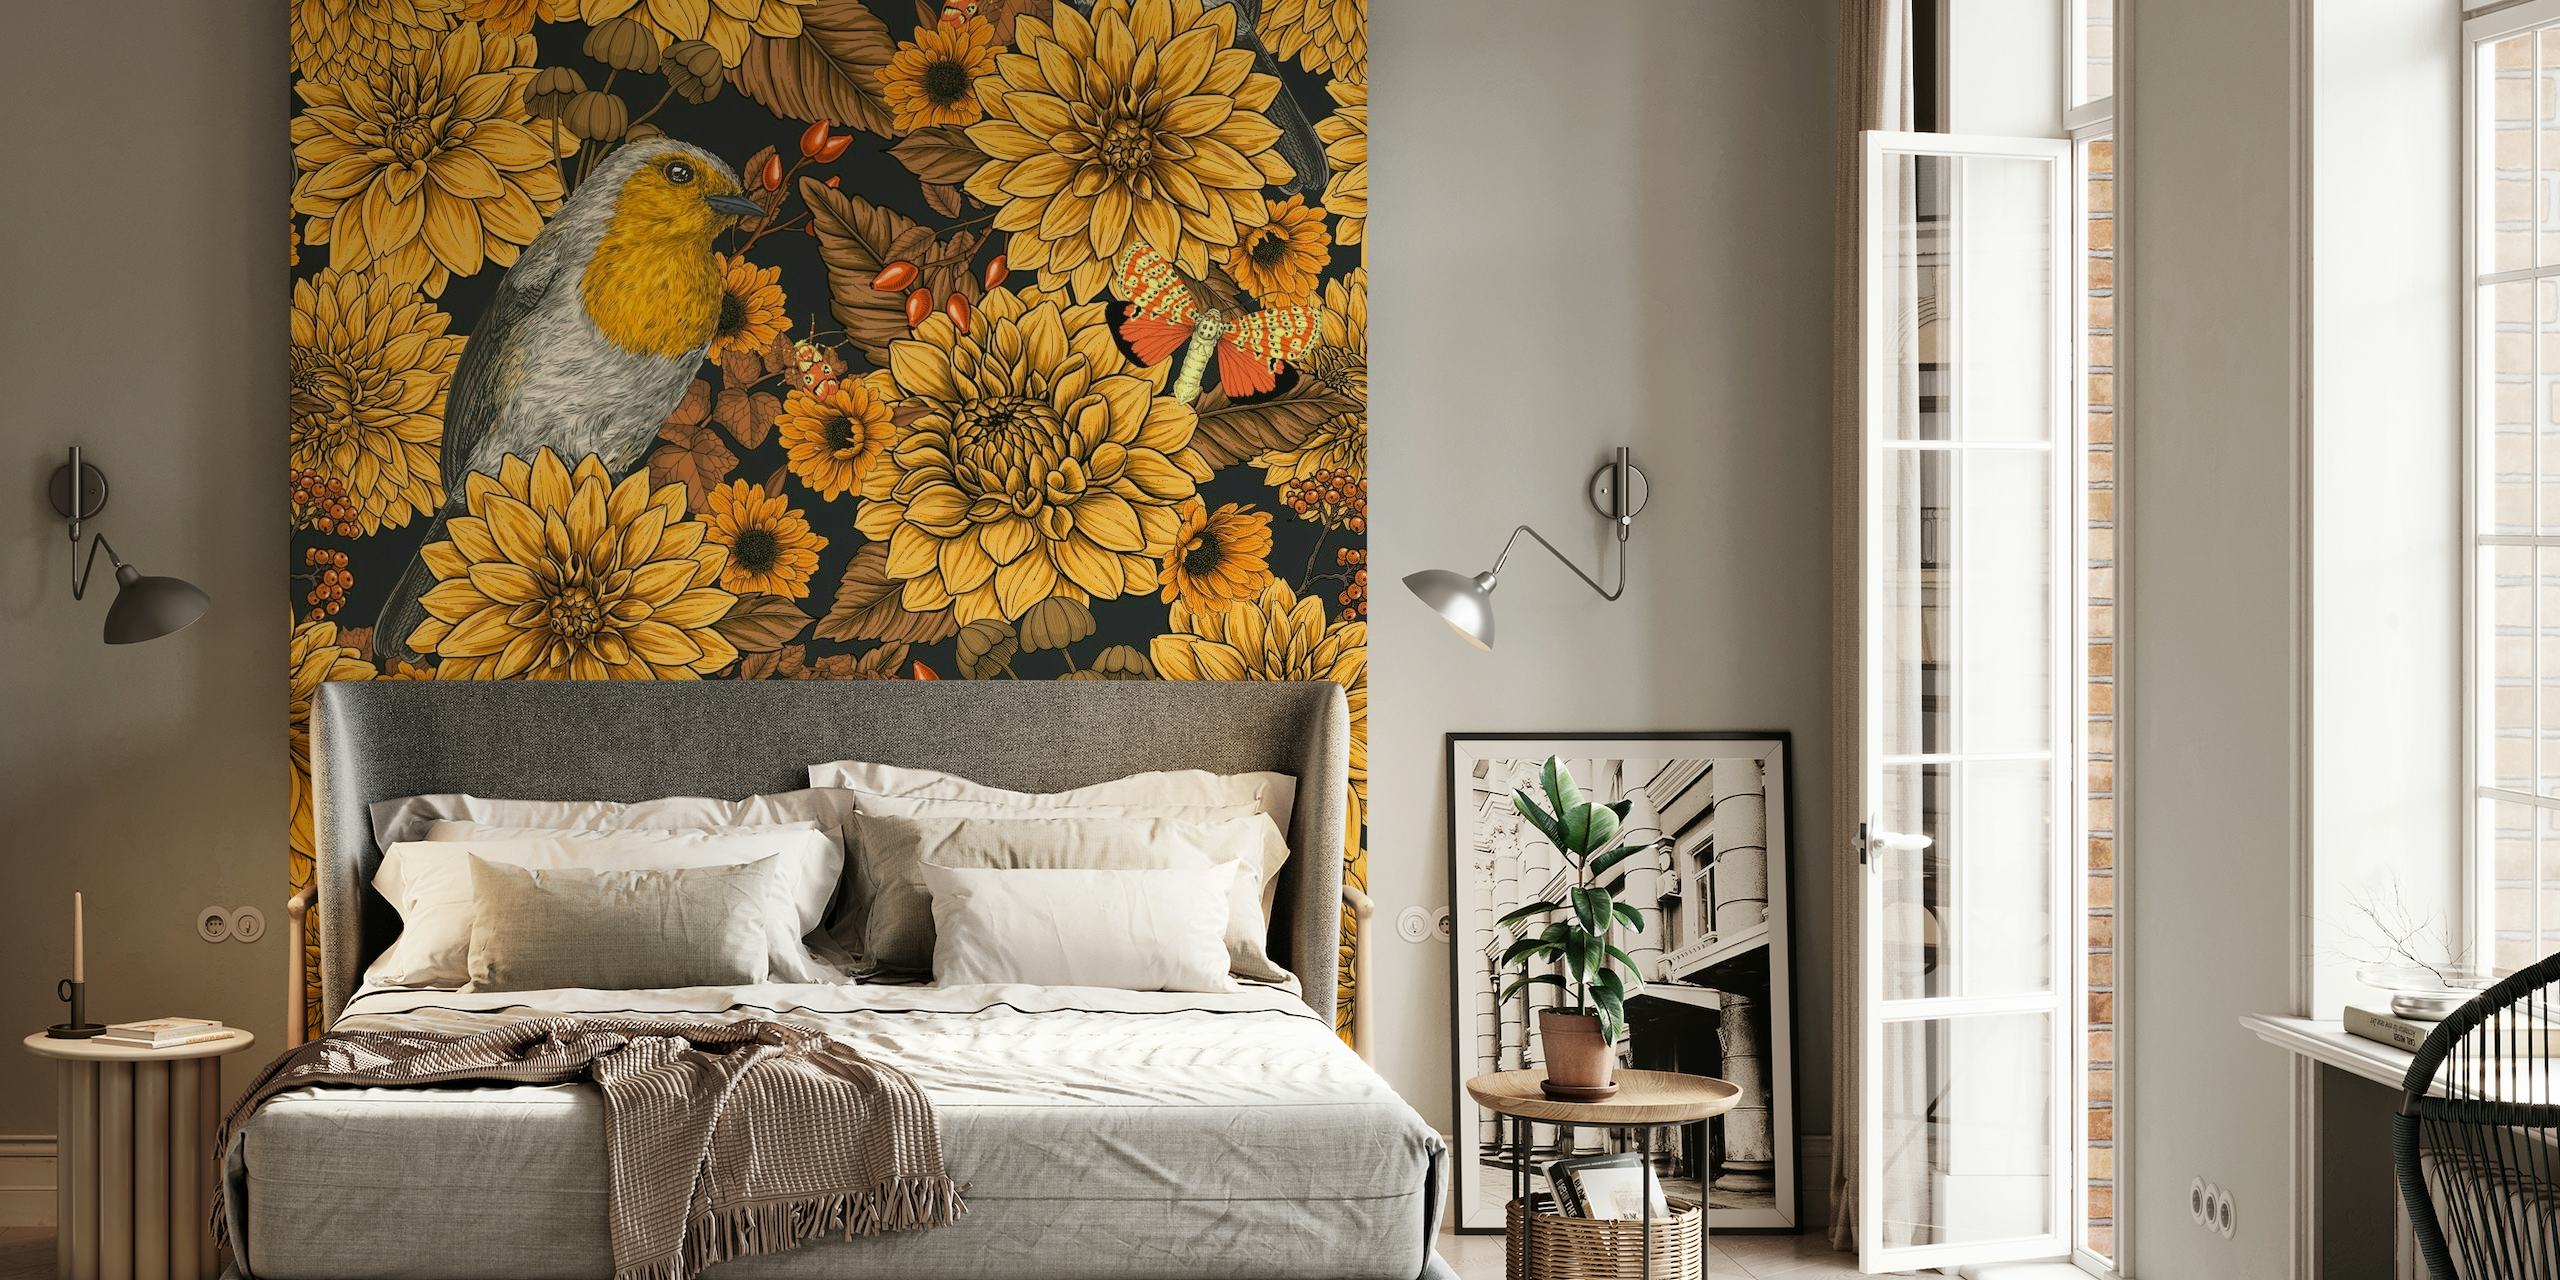 Un murale con pettirossi tra crisantemi dorati su uno sfondo scuro, che evoca un giardino al tramonto.